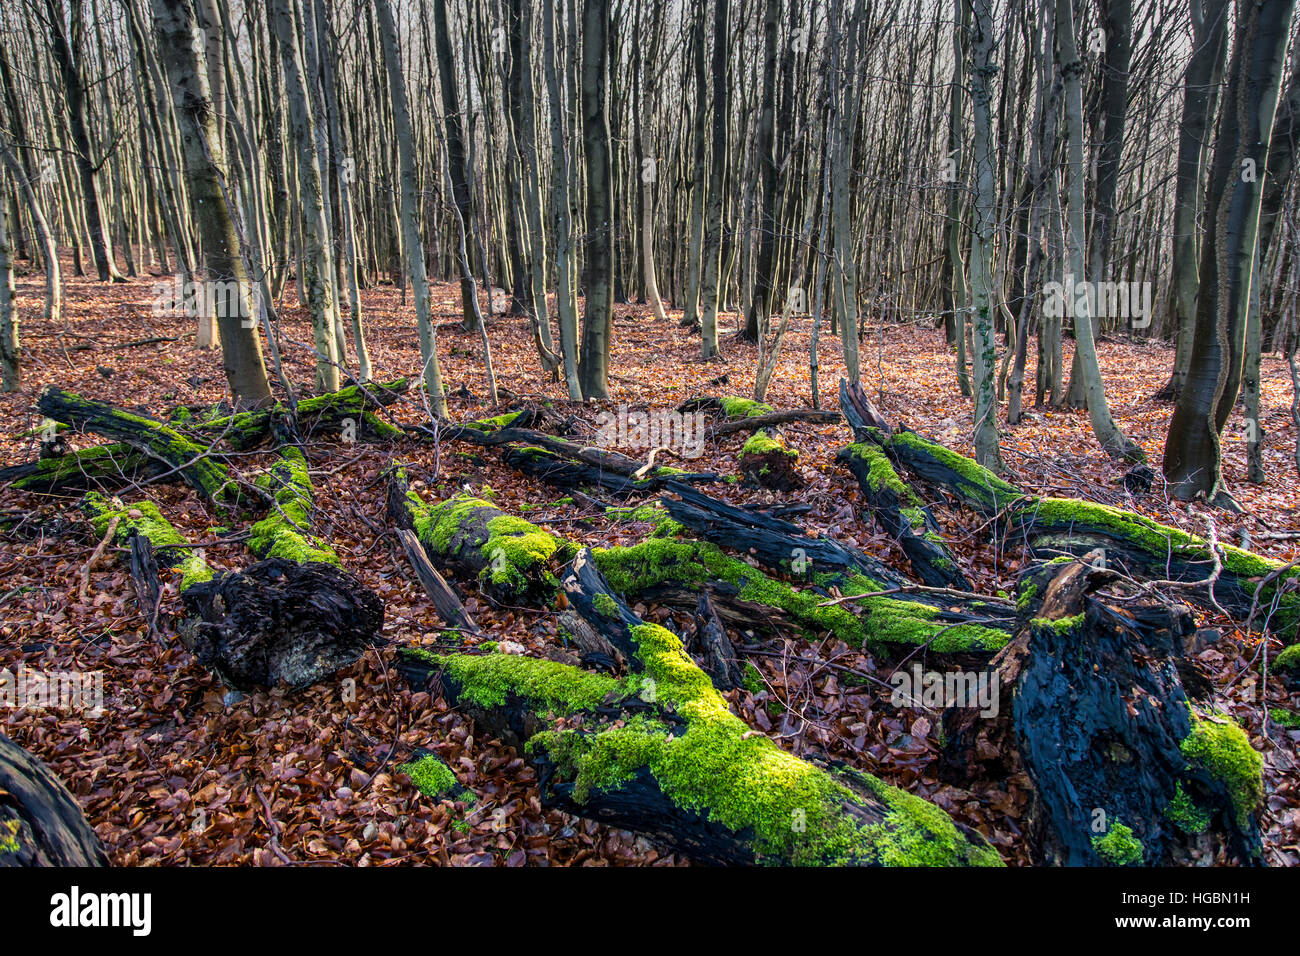 Bosque en invierno, musgo y hojas de árboles muertos, ramas de árboles, troncos de árbol, Foto de stock